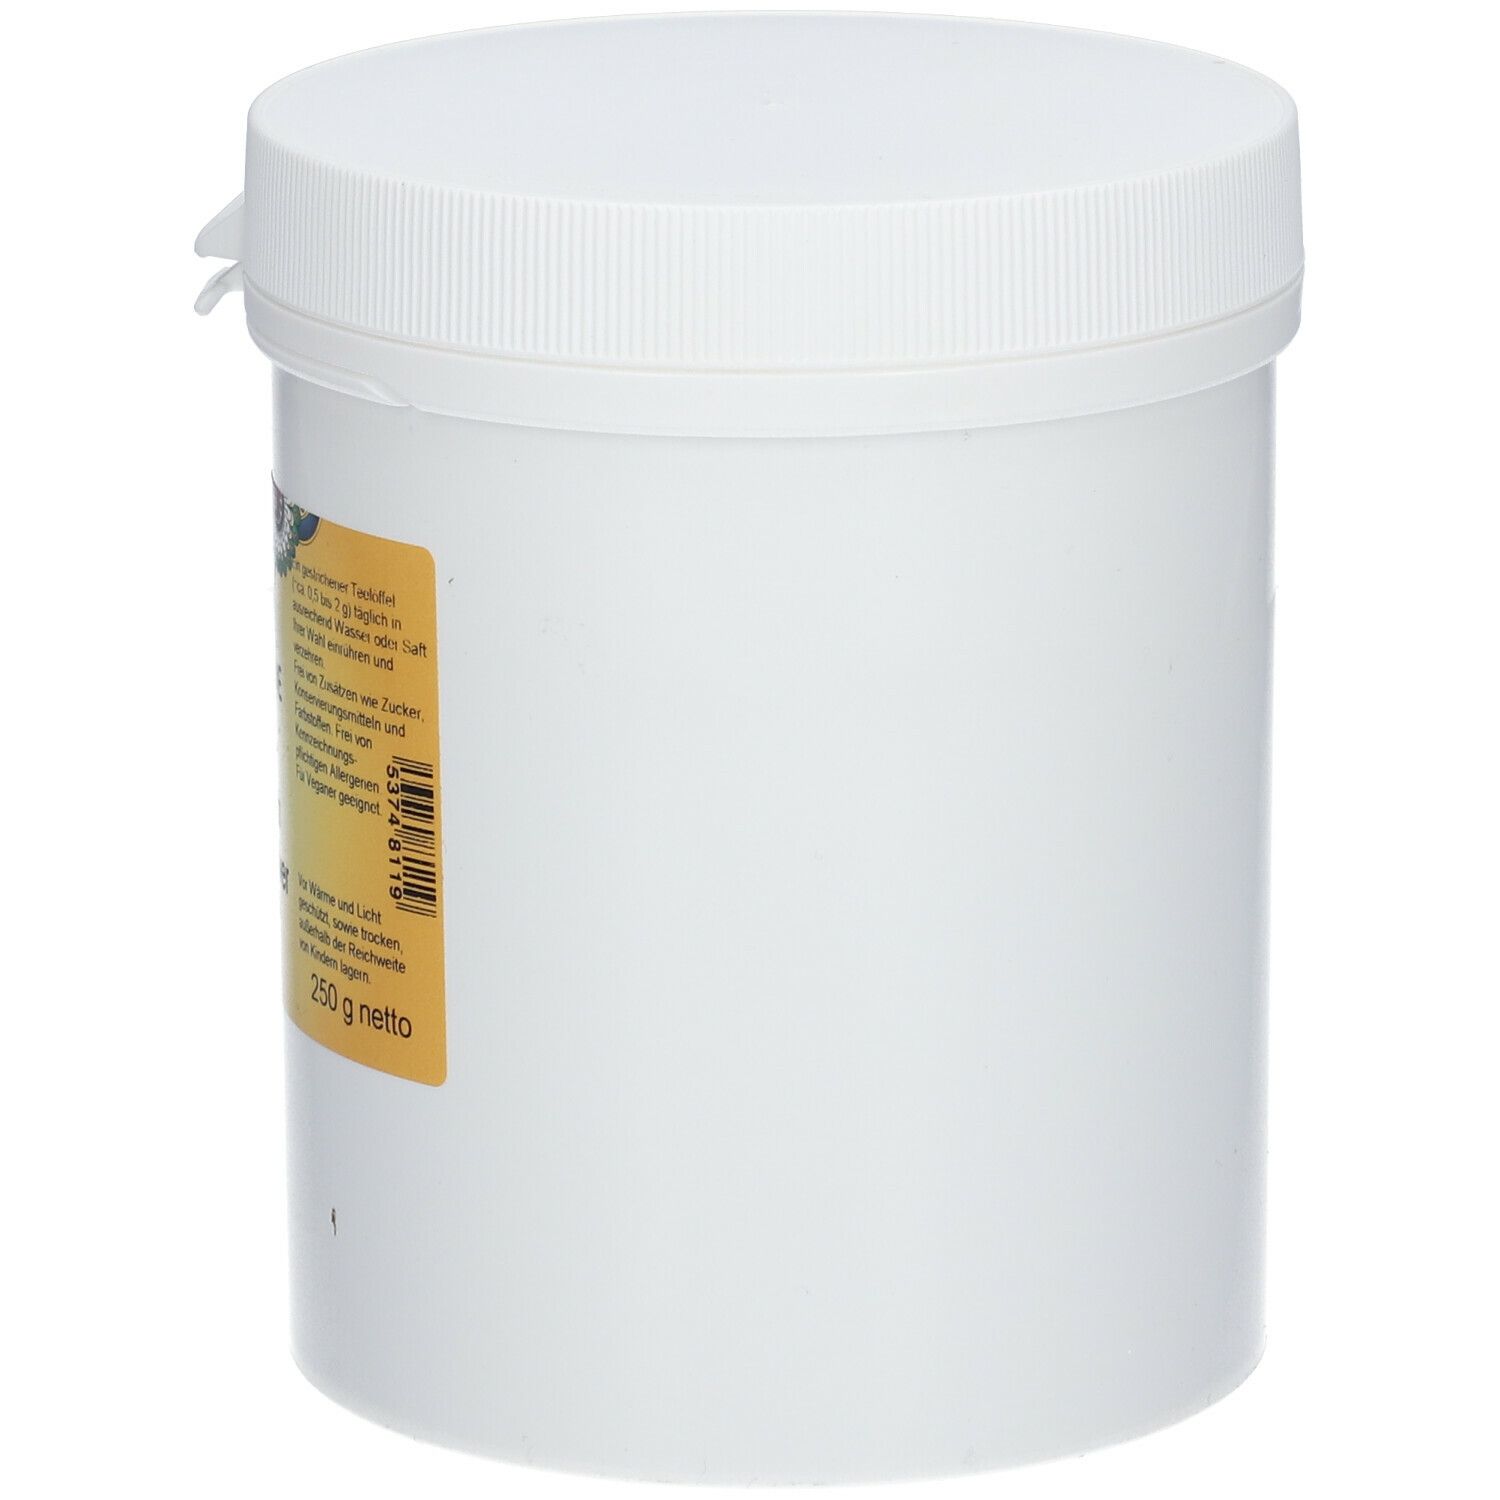 PRIMABENE Amaranth Extrakt Pulver (Oxystorm®)